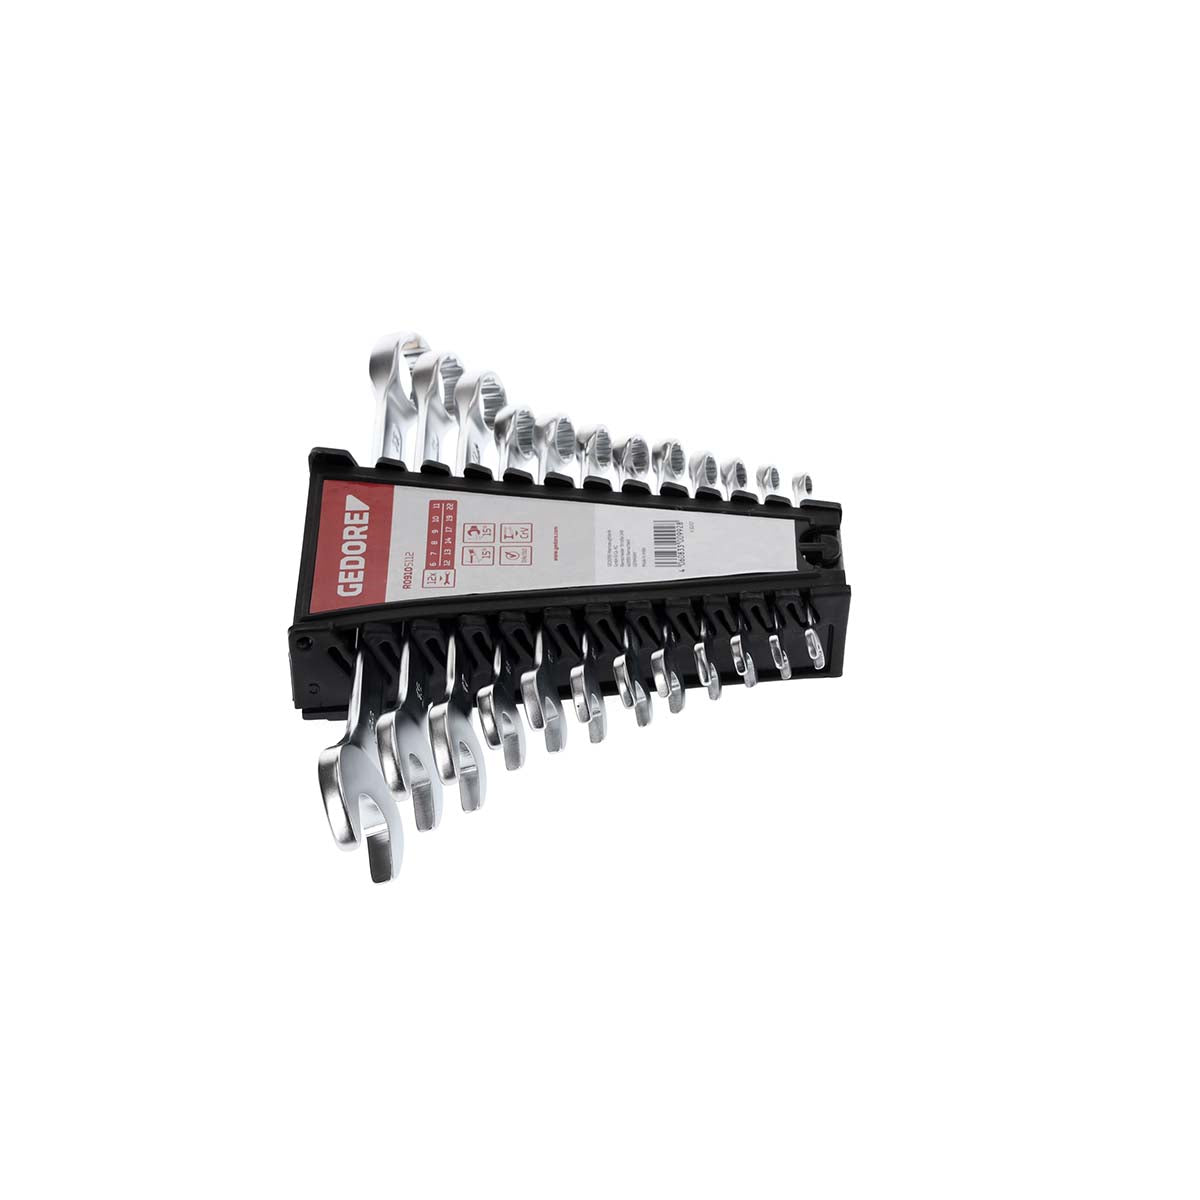 GEDORE red R09105112 - Juego de llaves combinadas, 6-22 mm, 12 piezas (3300992)